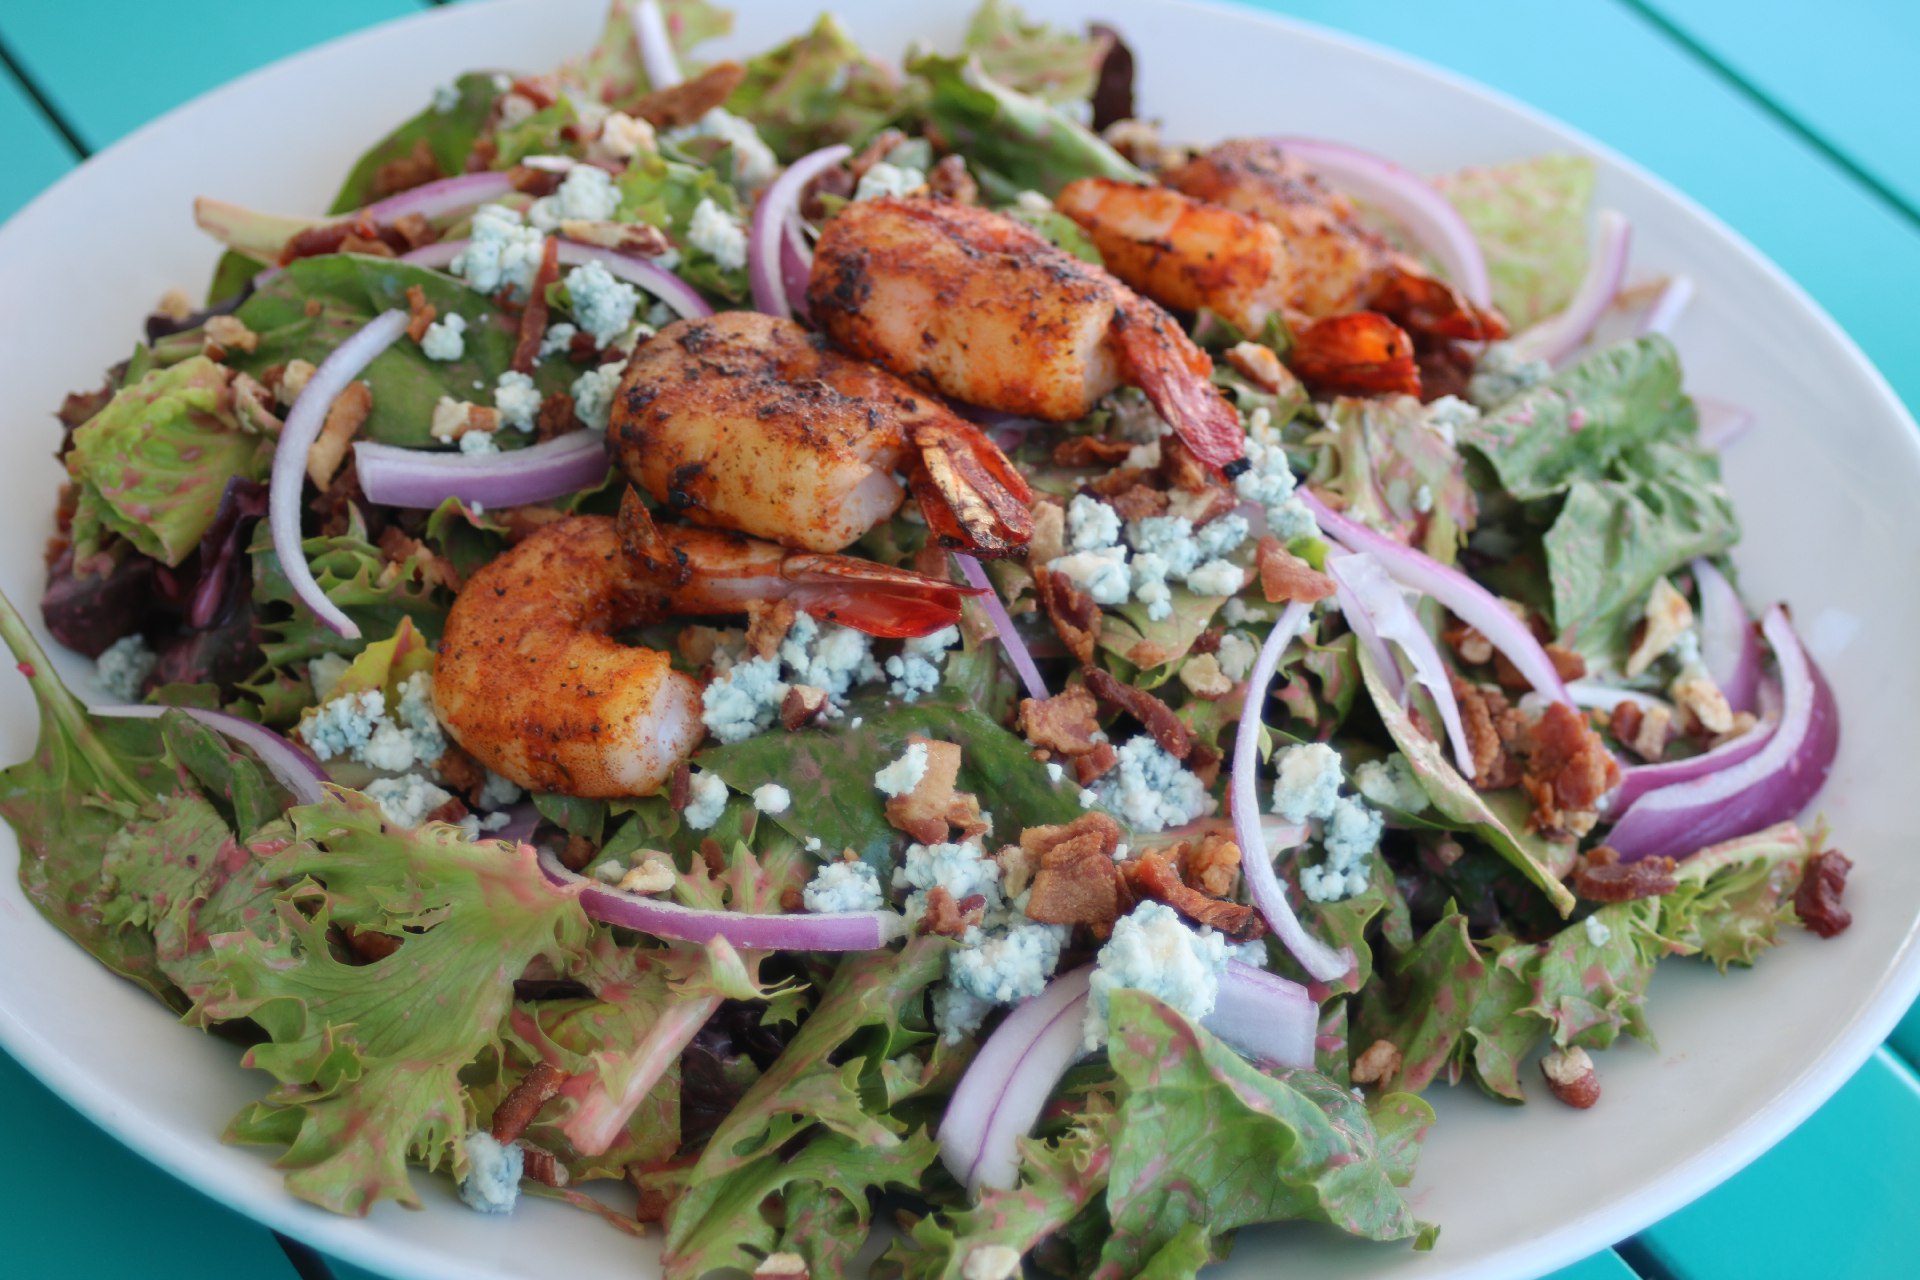 grilled shrimp over salad greens